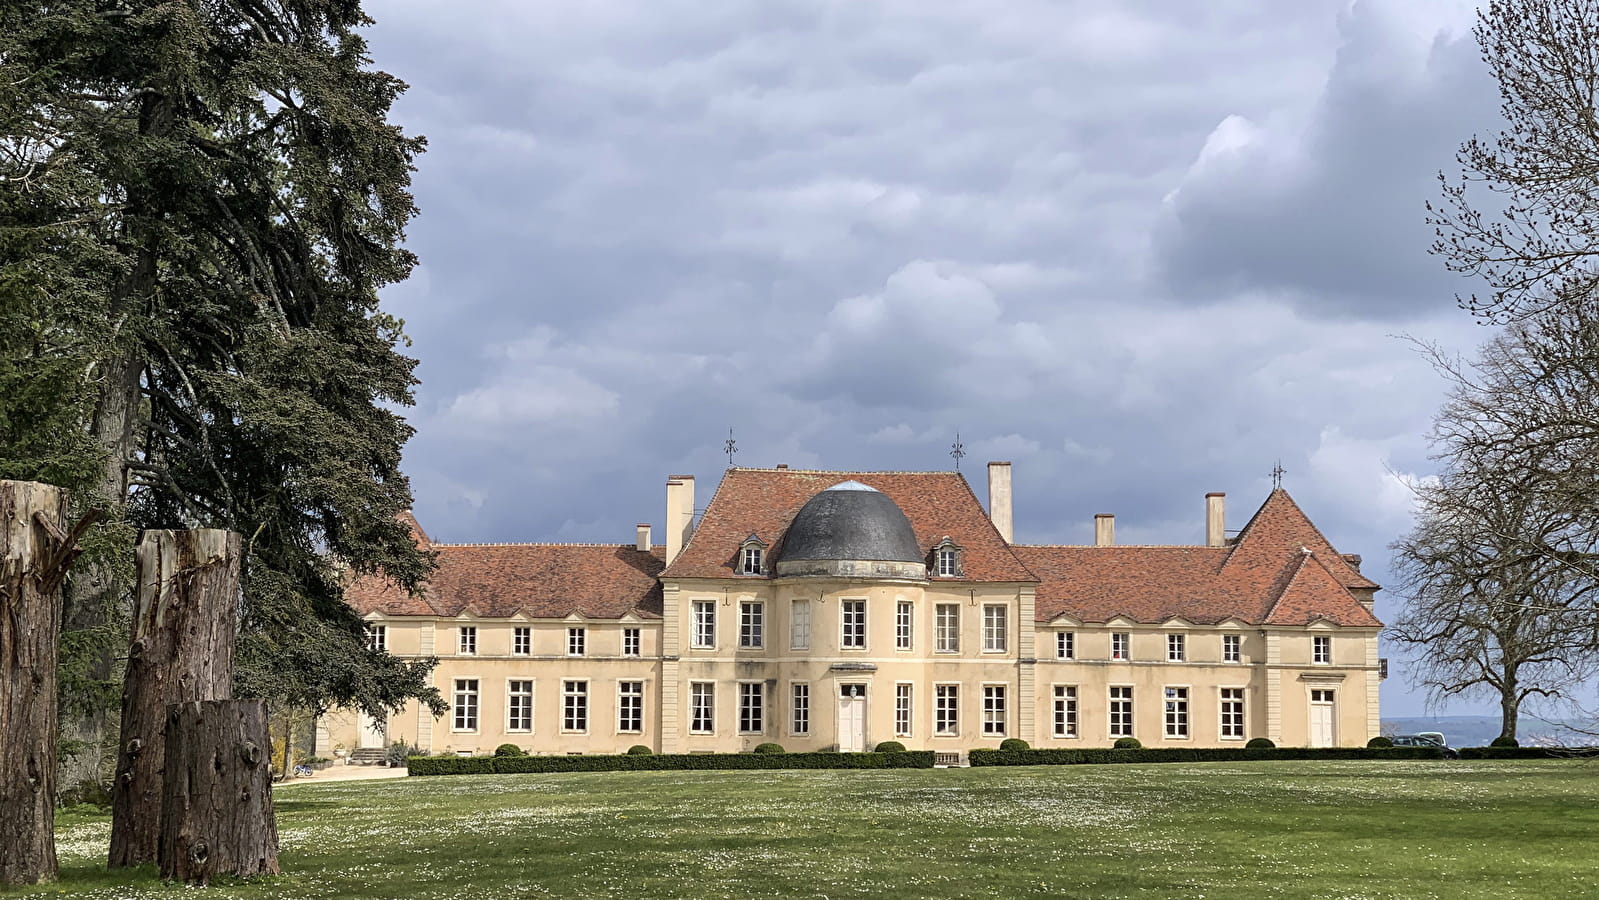 Journées européennes du patrimoine : Château et jardin potager de Lantilly